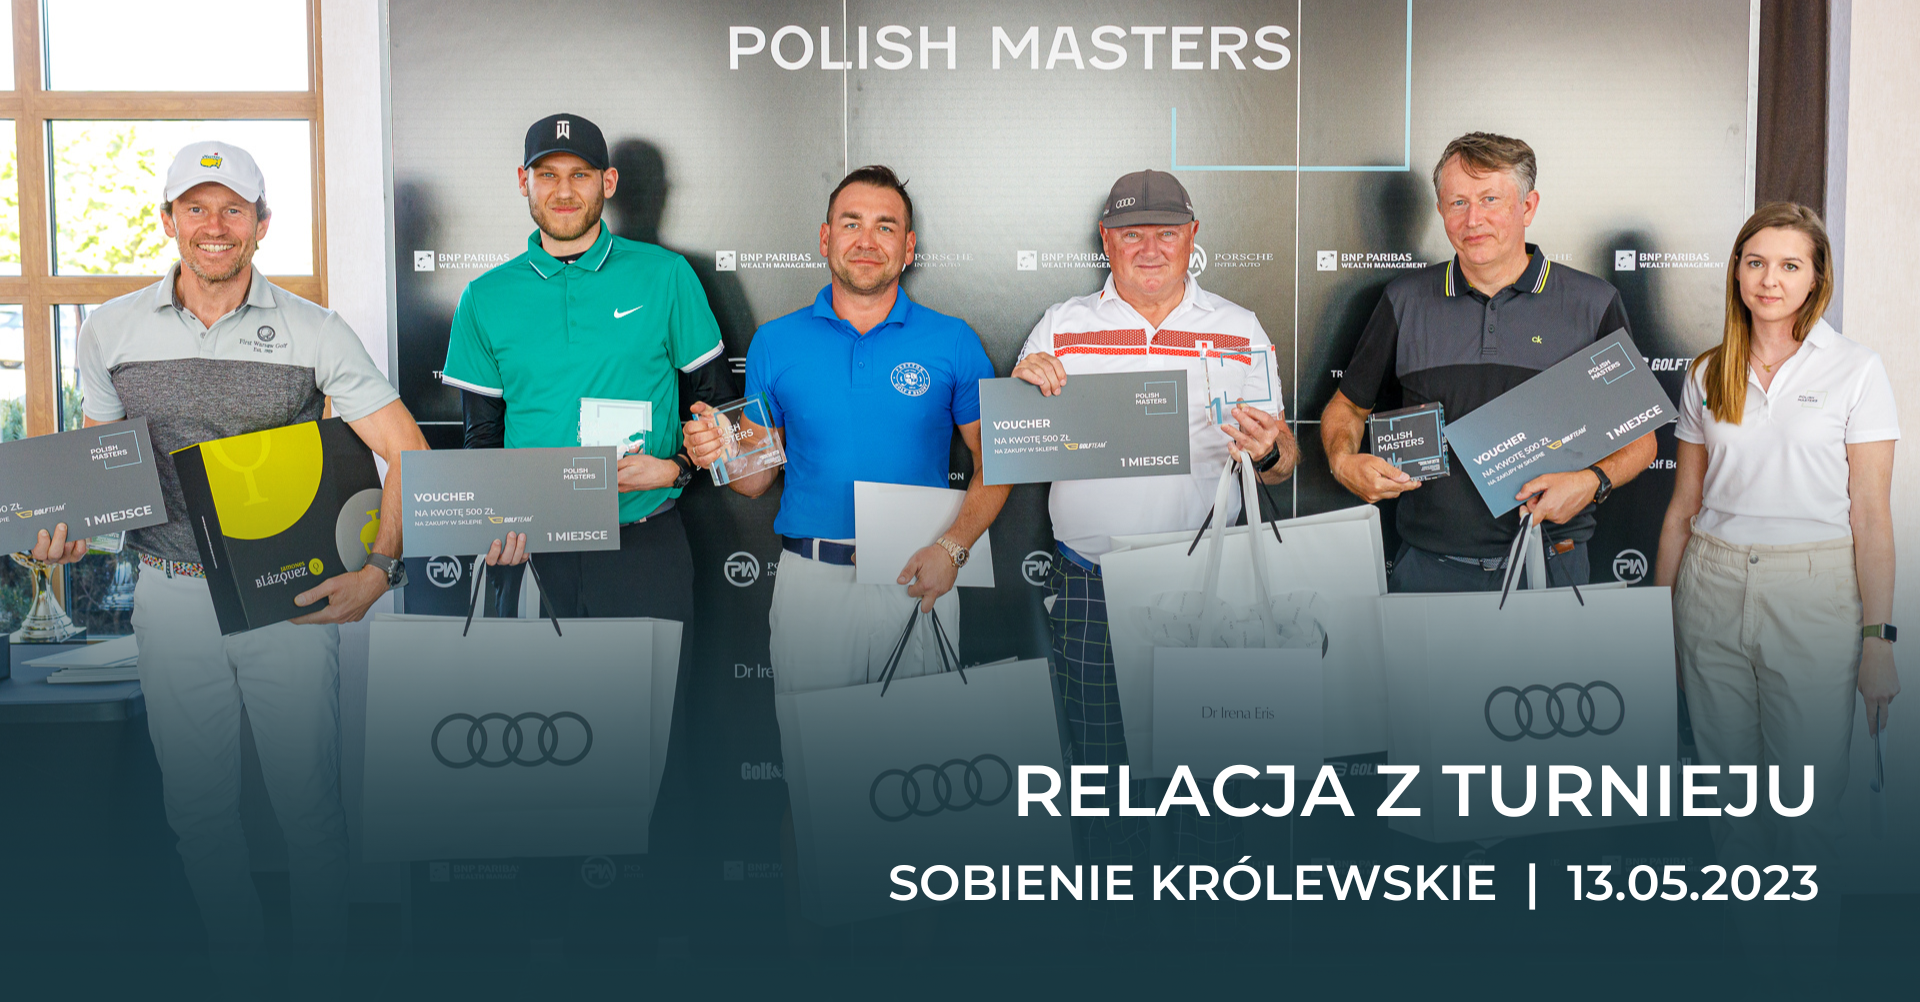 Inauguracja sezonu Polish Masters 2023 za nami – Sobienie Królewskie [RELACJA]